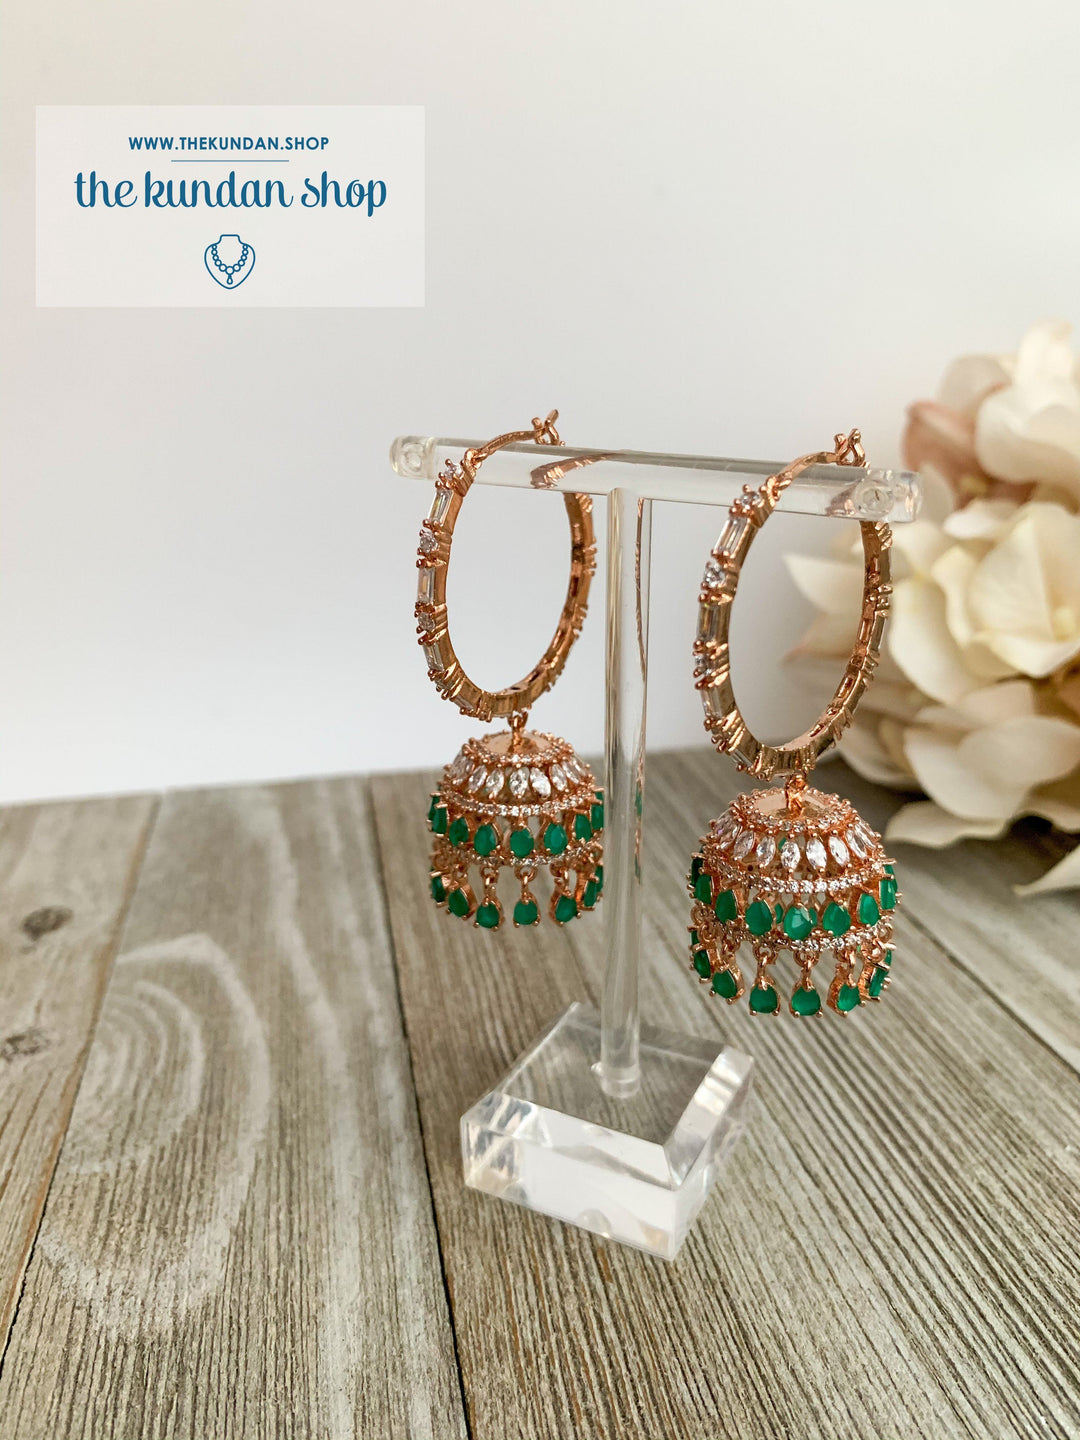 Bliss Baalis in Rose Gold & Emerald Earrings THE KUNDAN SHOP 